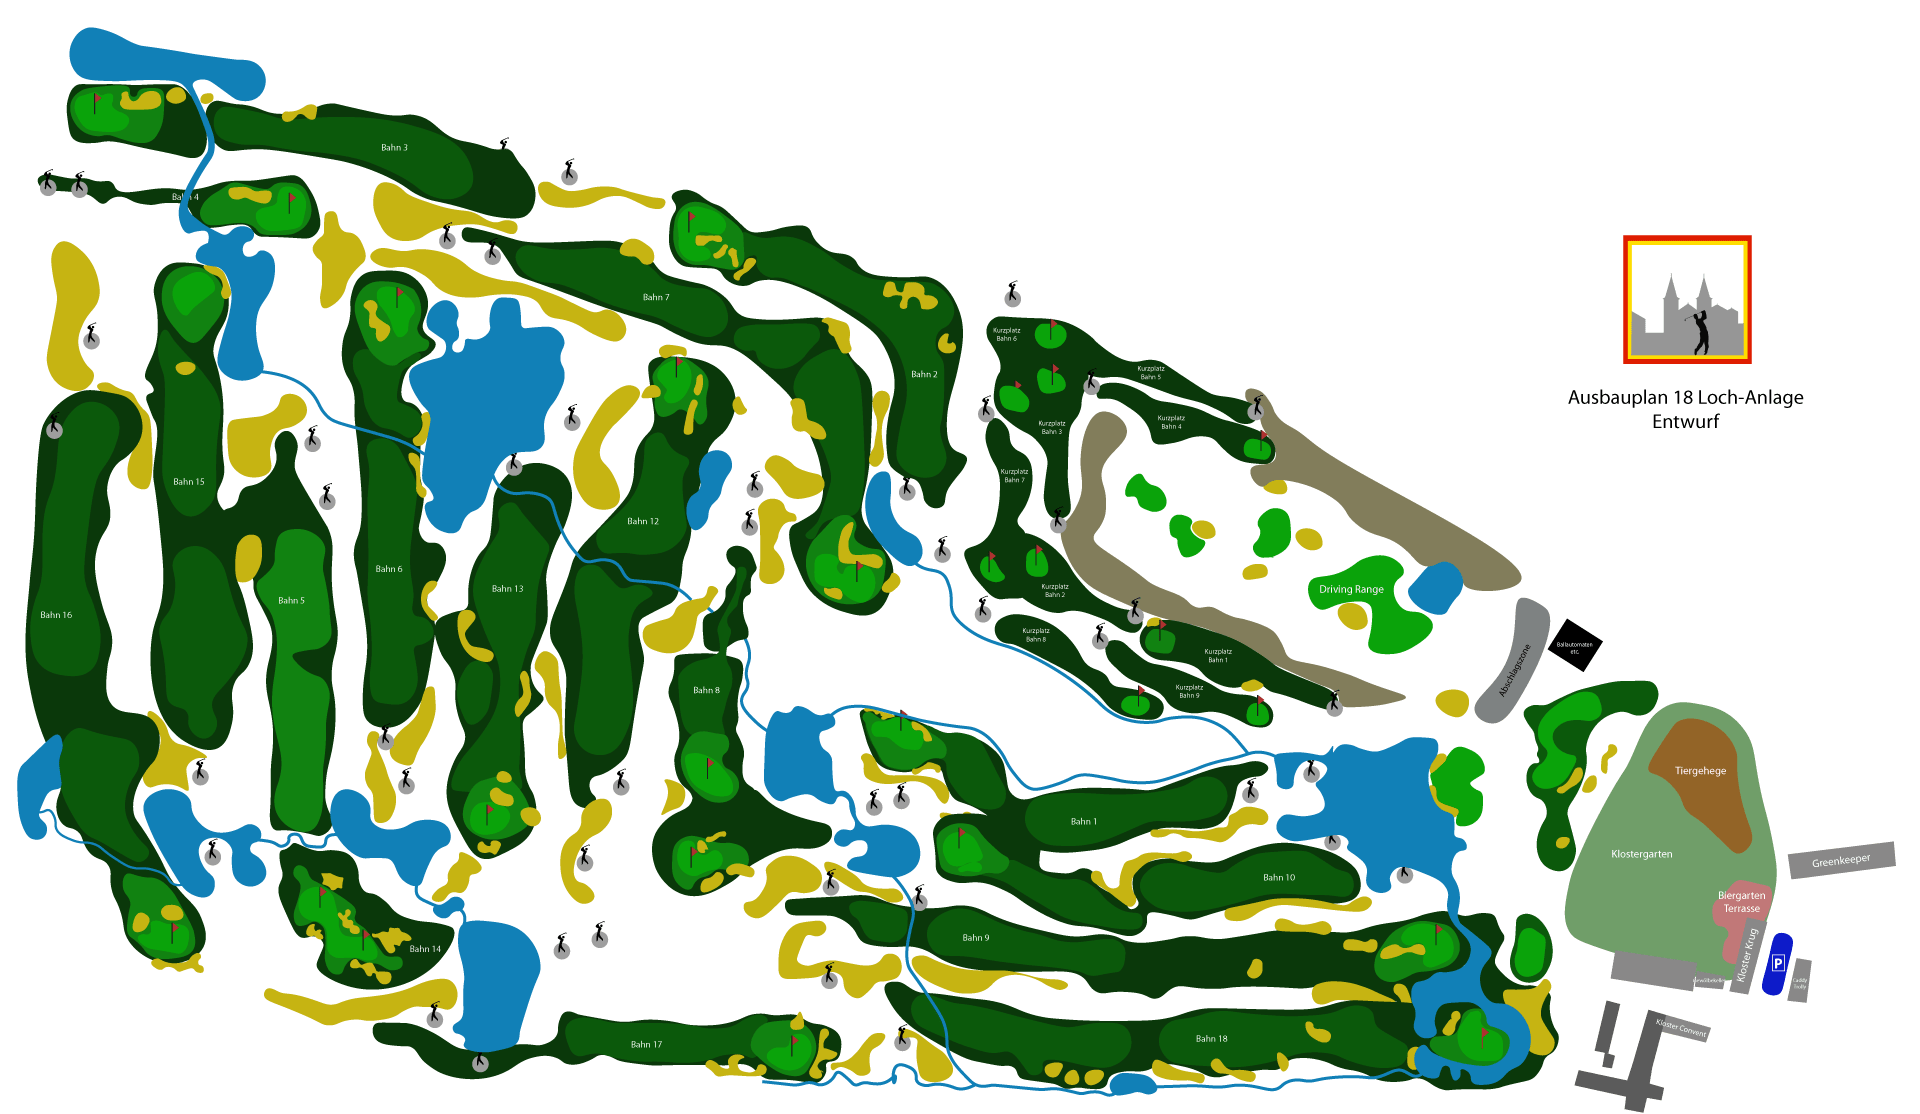 Golfclub St. Lorenz - Übersichtsplan 18-Loch-Anlage - Entwurf